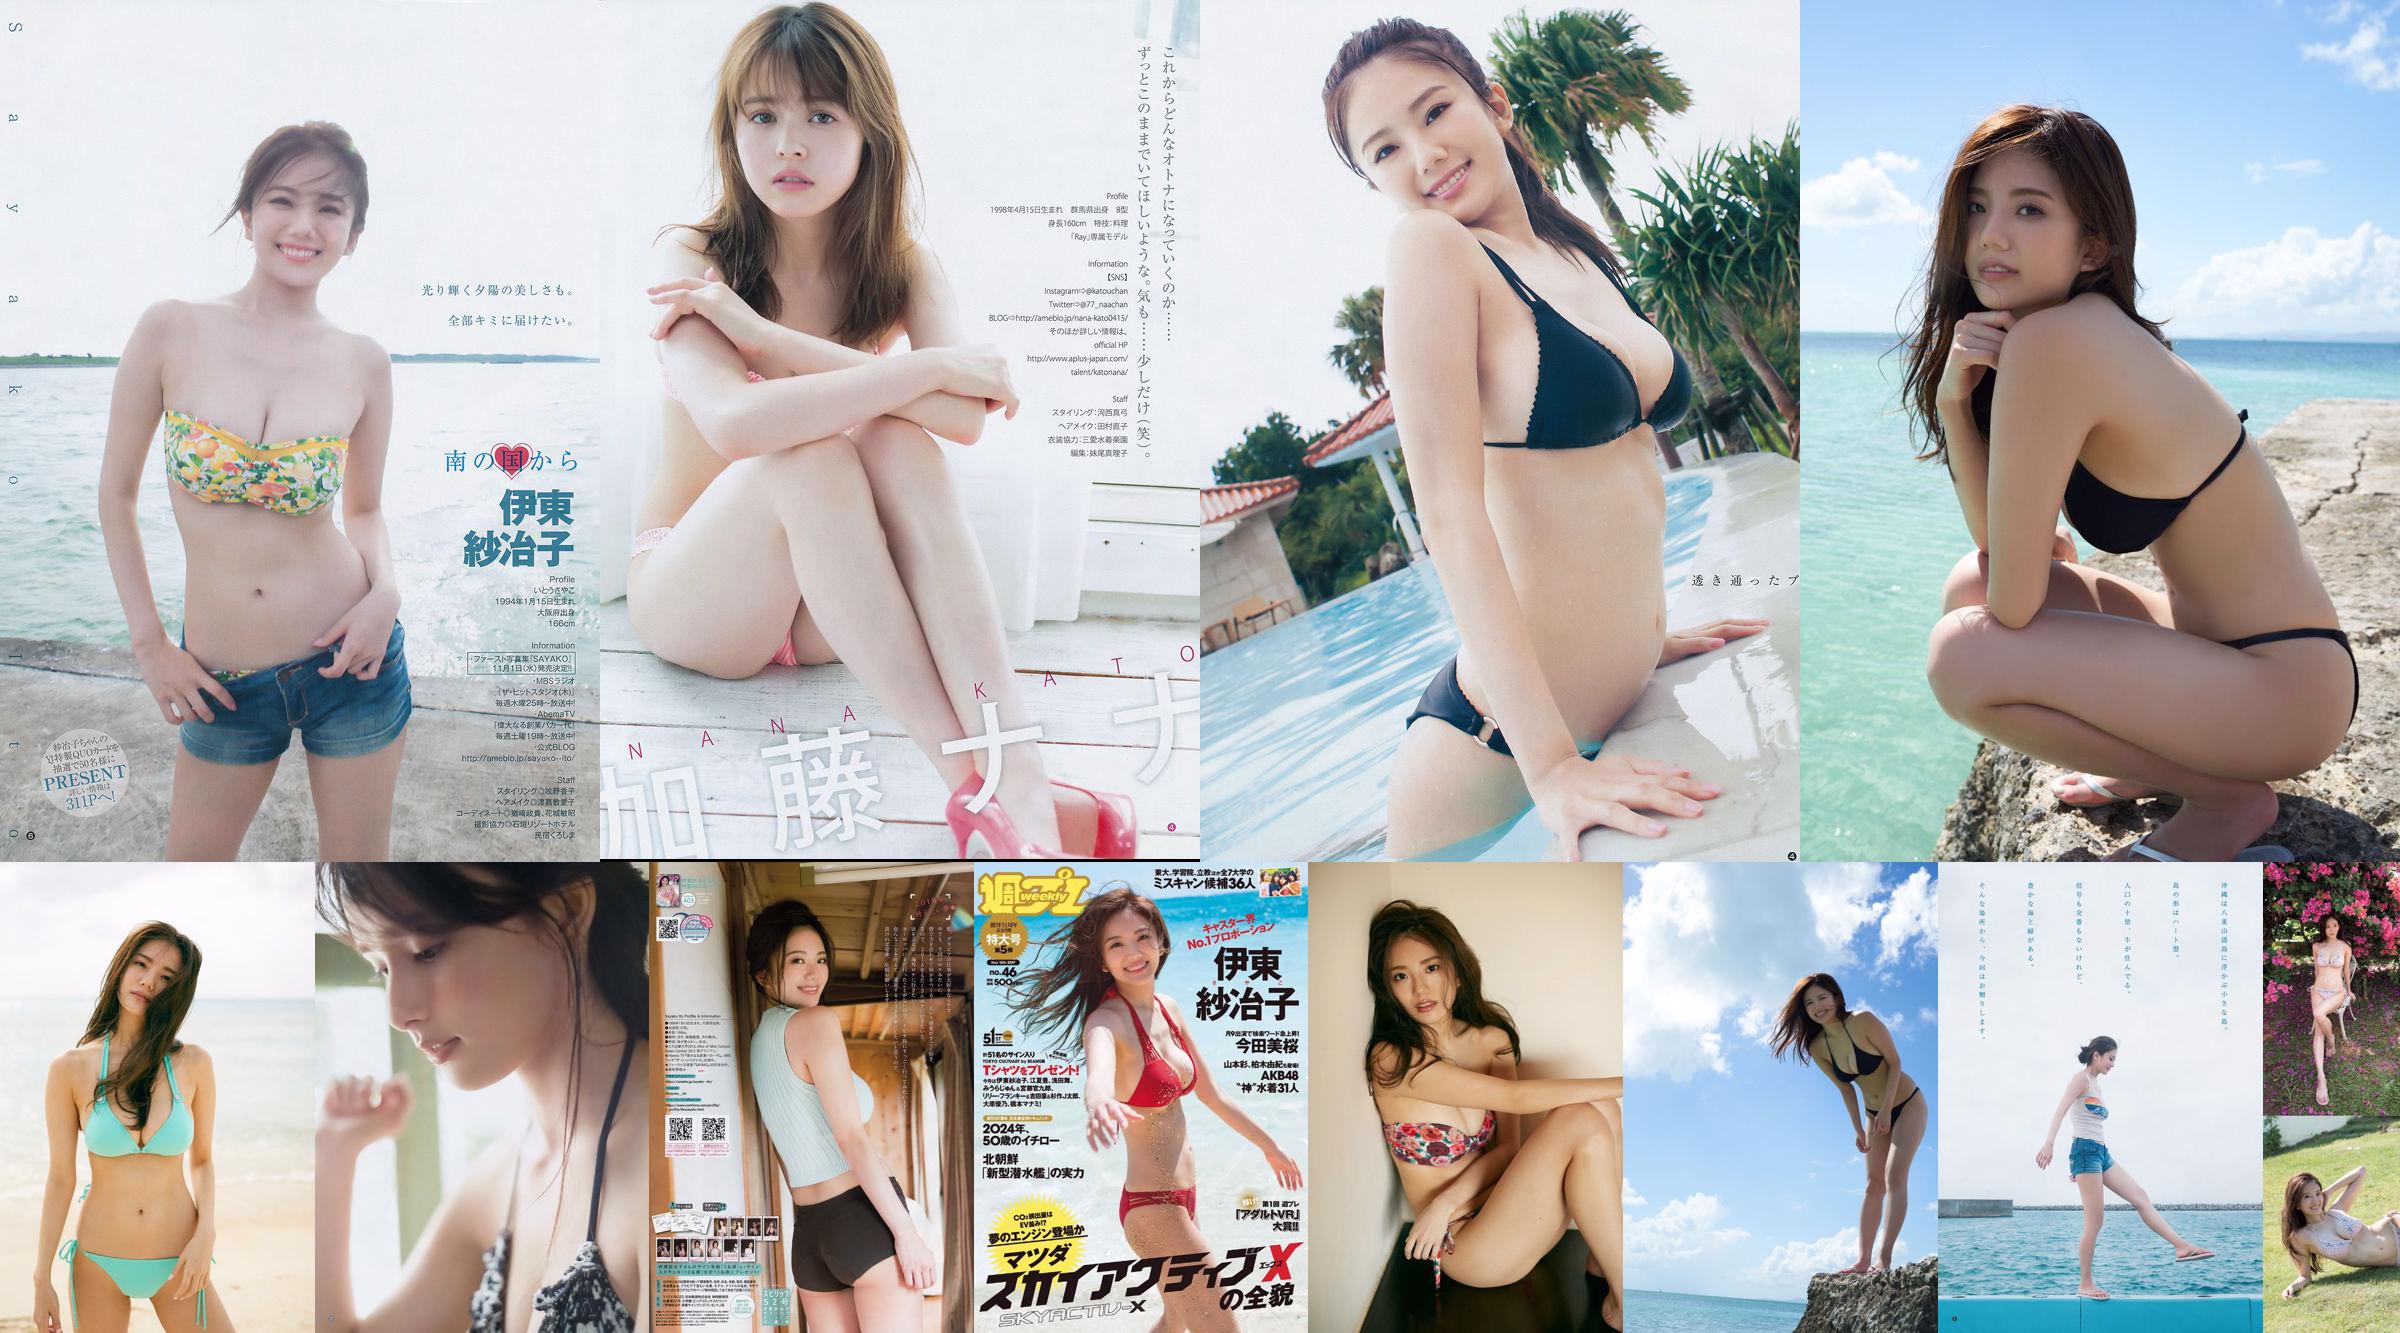 Ito Sayeko, Mima Reiko, Sugimoto Yumi, Sato Reina, Yoshiki Toyama Akiko, Naninao [Weekly Playboy] 2016 No.36 Majalah Foto No.3be551 Halaman 1